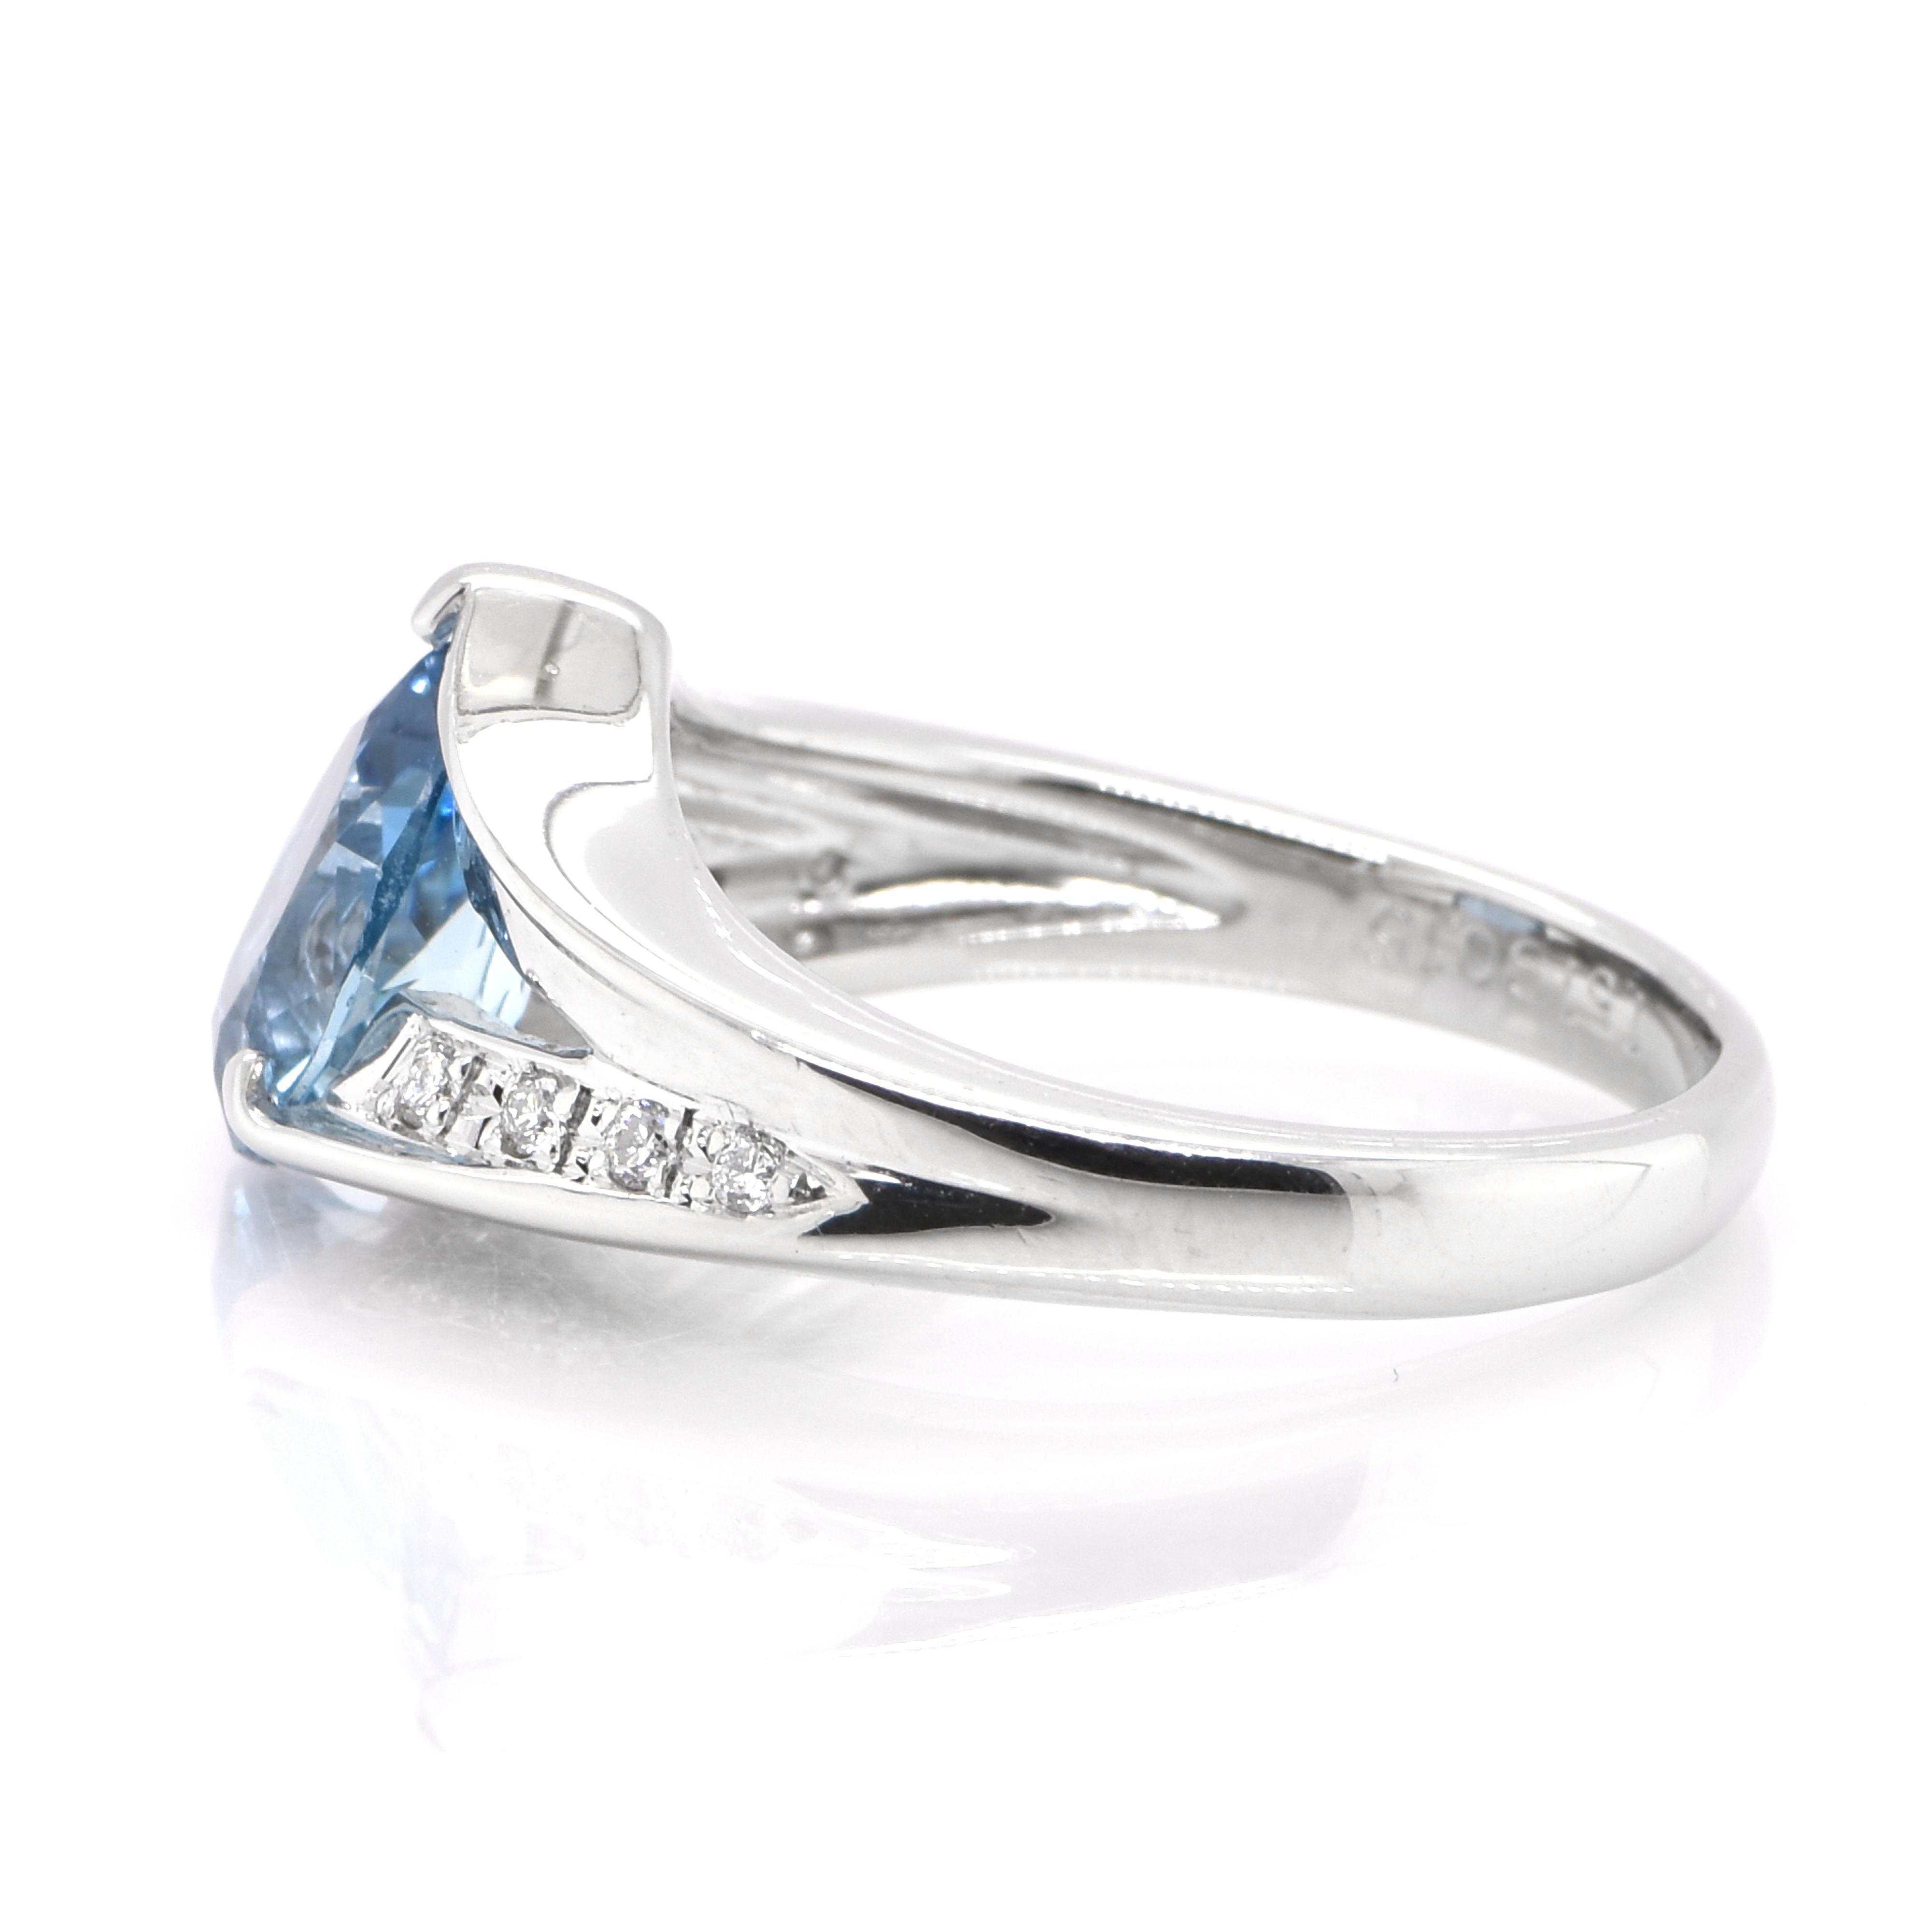 25 carat aquamarine ring